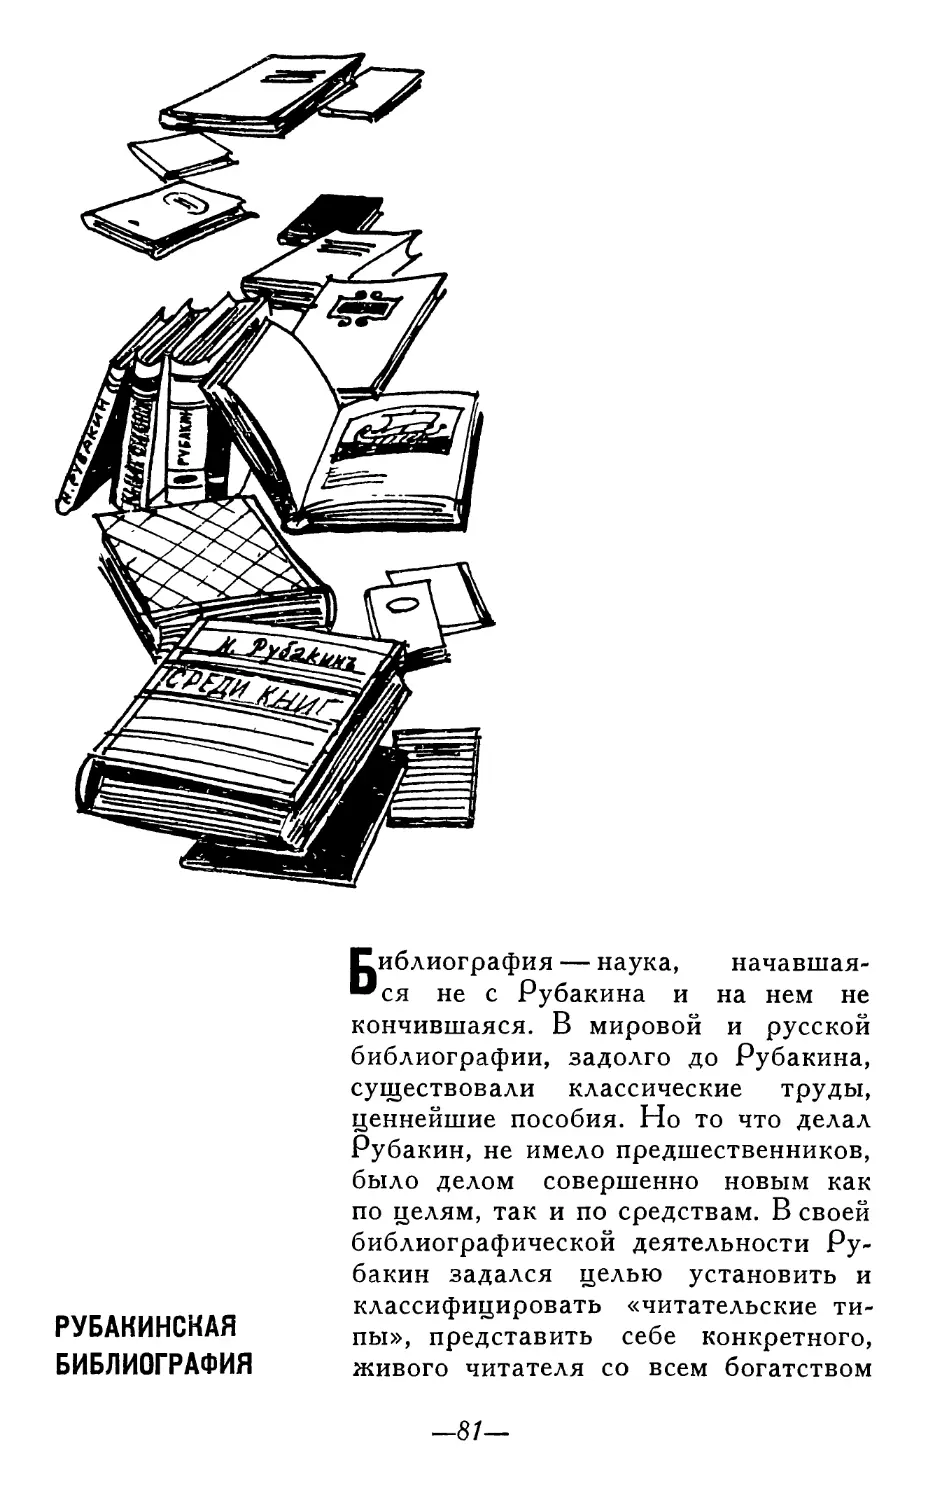 Рубакинская библиография